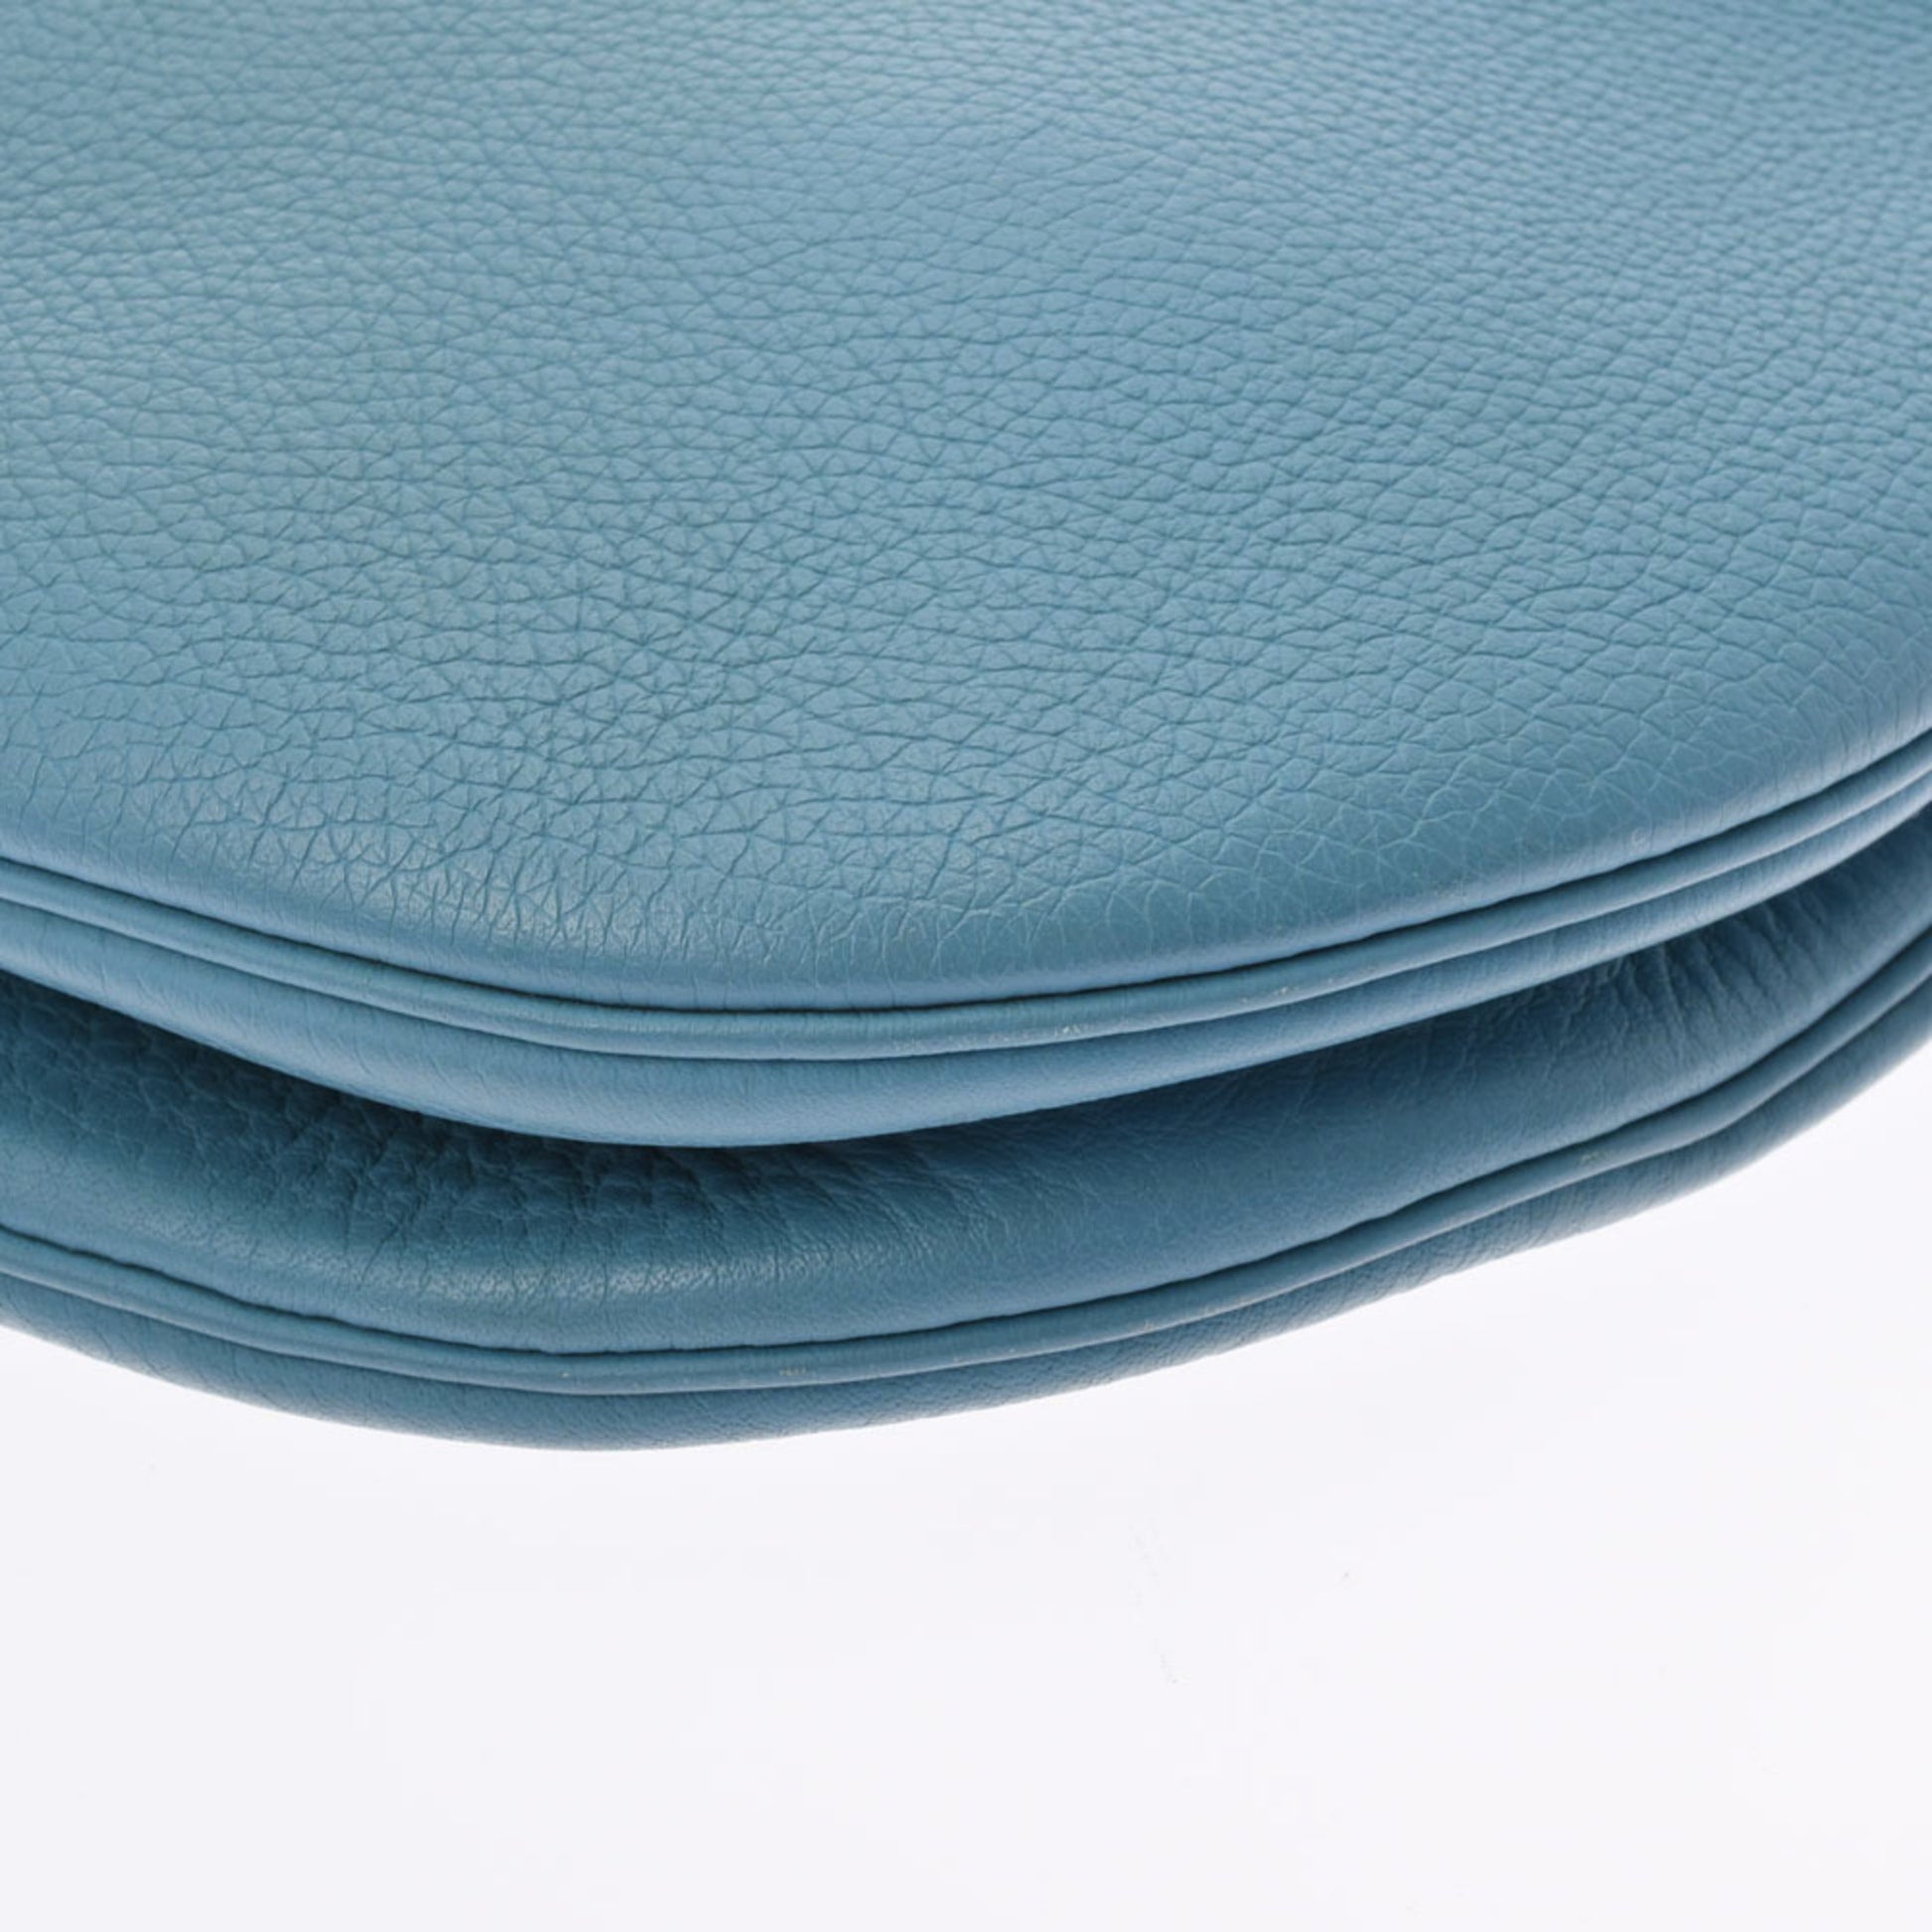 HERMES GAO Clemence leather Blue jean Shoulder bag 500030147 –  BRANDSHOP-RESHINE